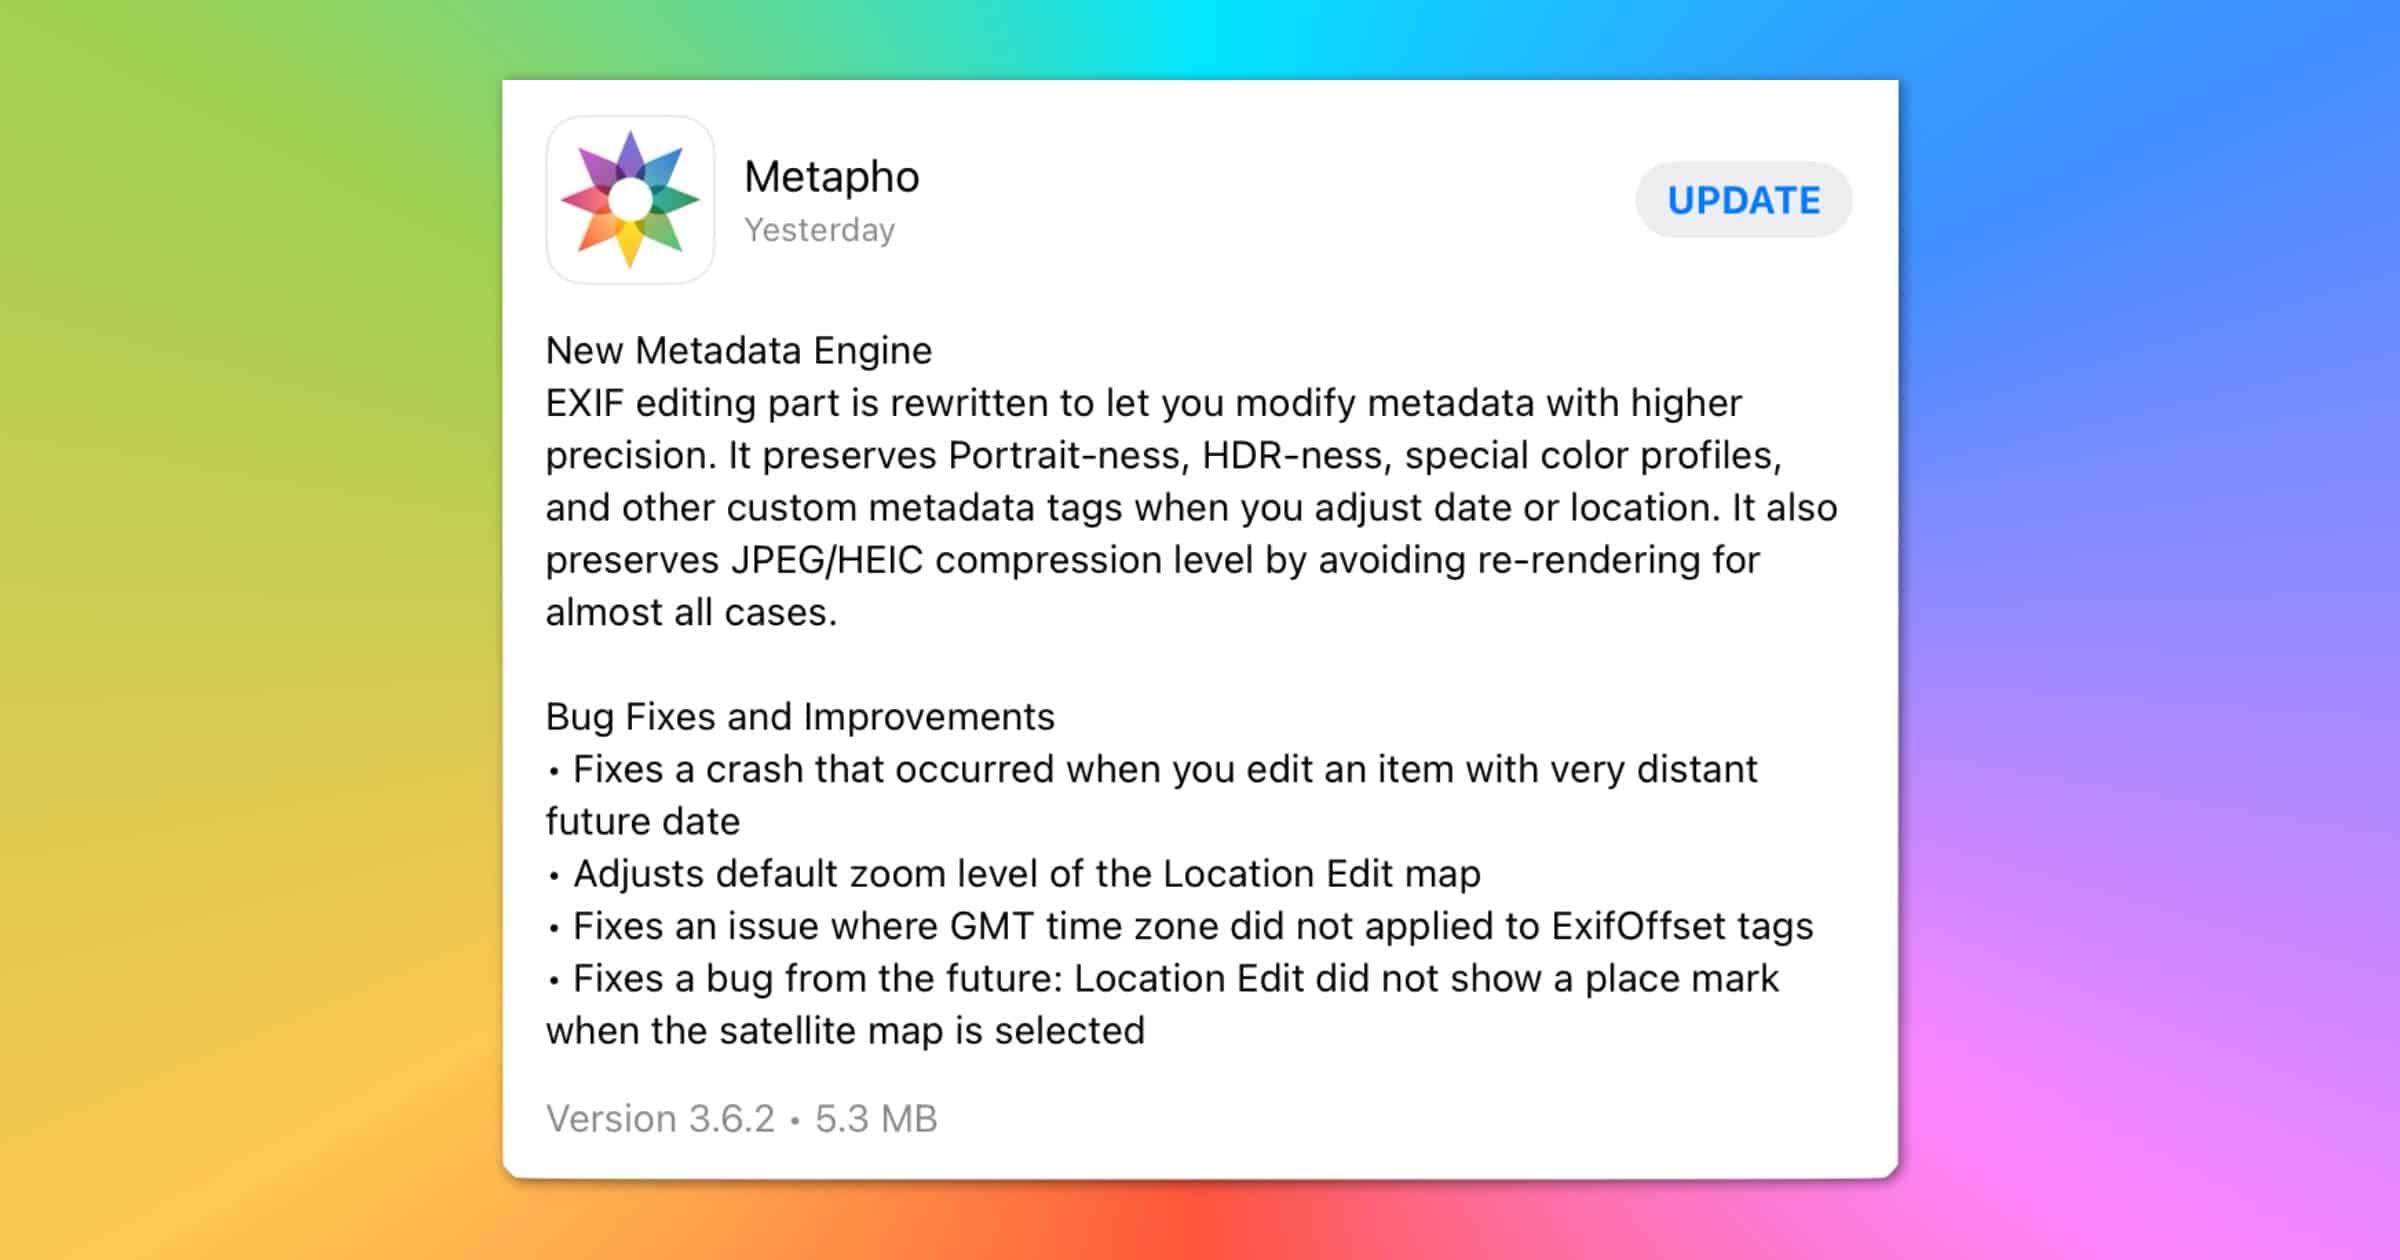 Metadata Editor ‘Metapho’ Has a New EXIF Engine